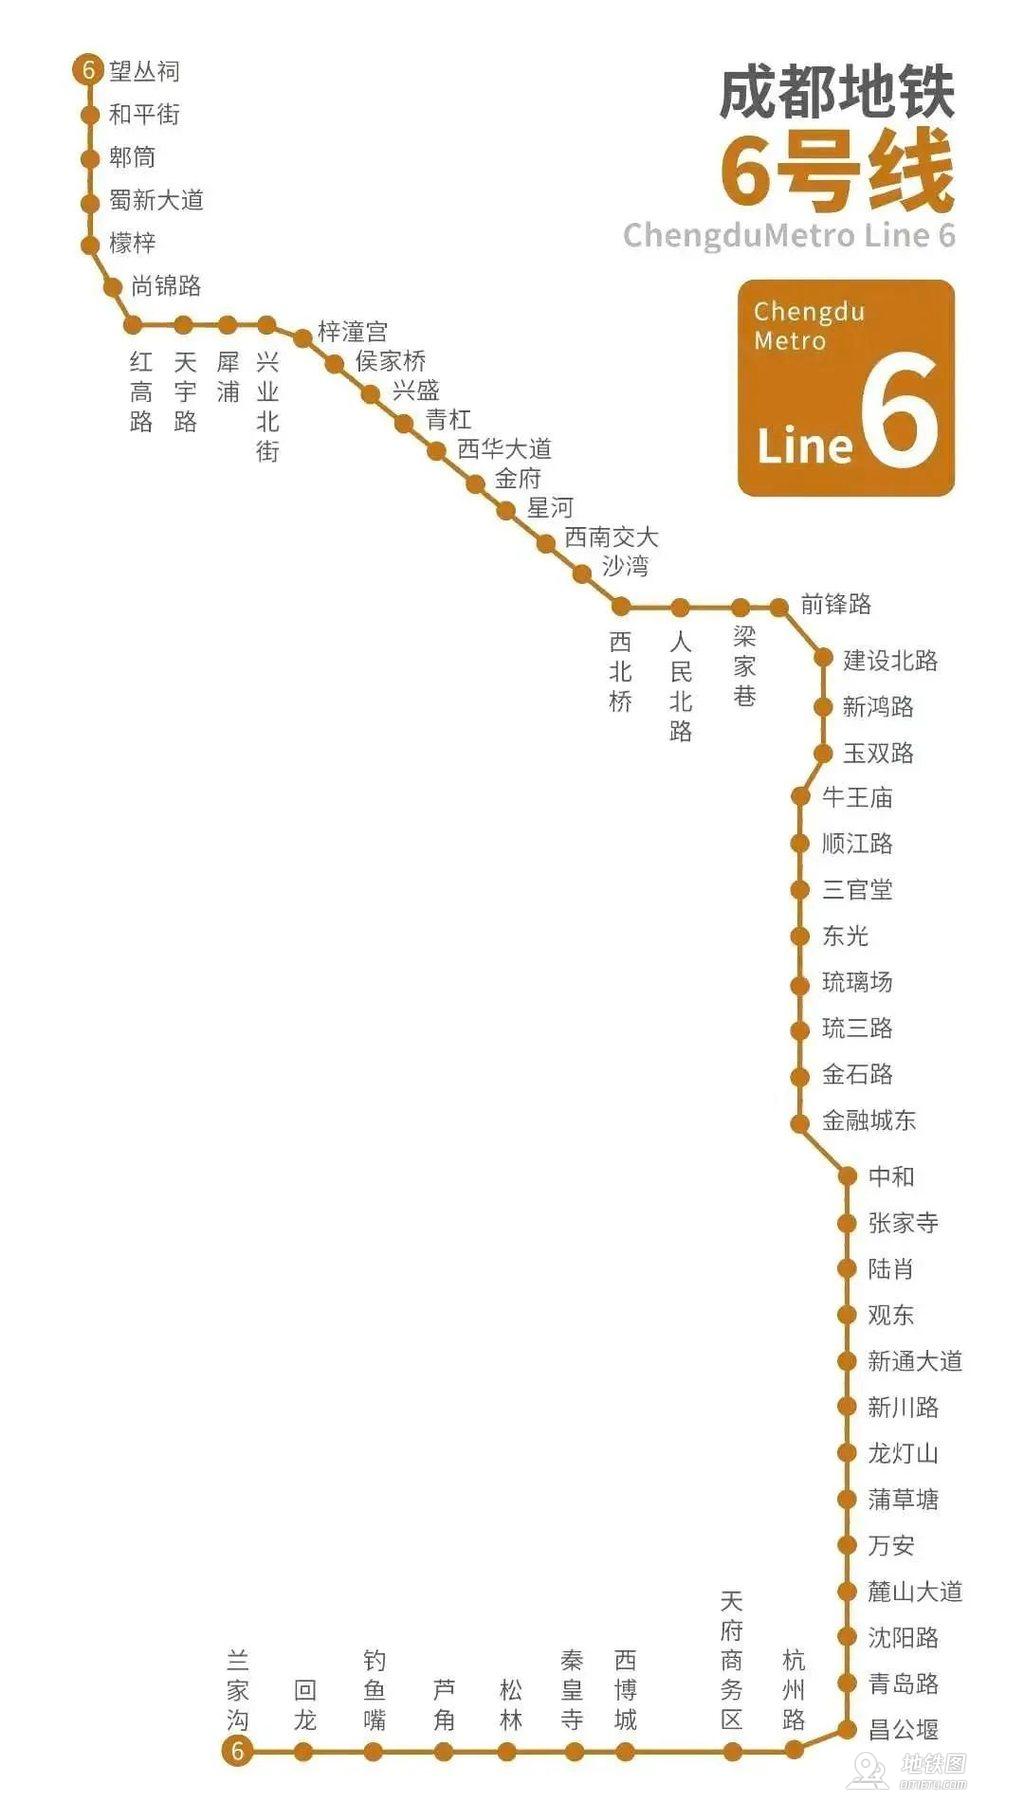 成都地铁今天五线齐发 正式跻身轨道交通“第四城” 今年全国城轨交通新增里程有望突破1000公里，再创新高 | 每经网